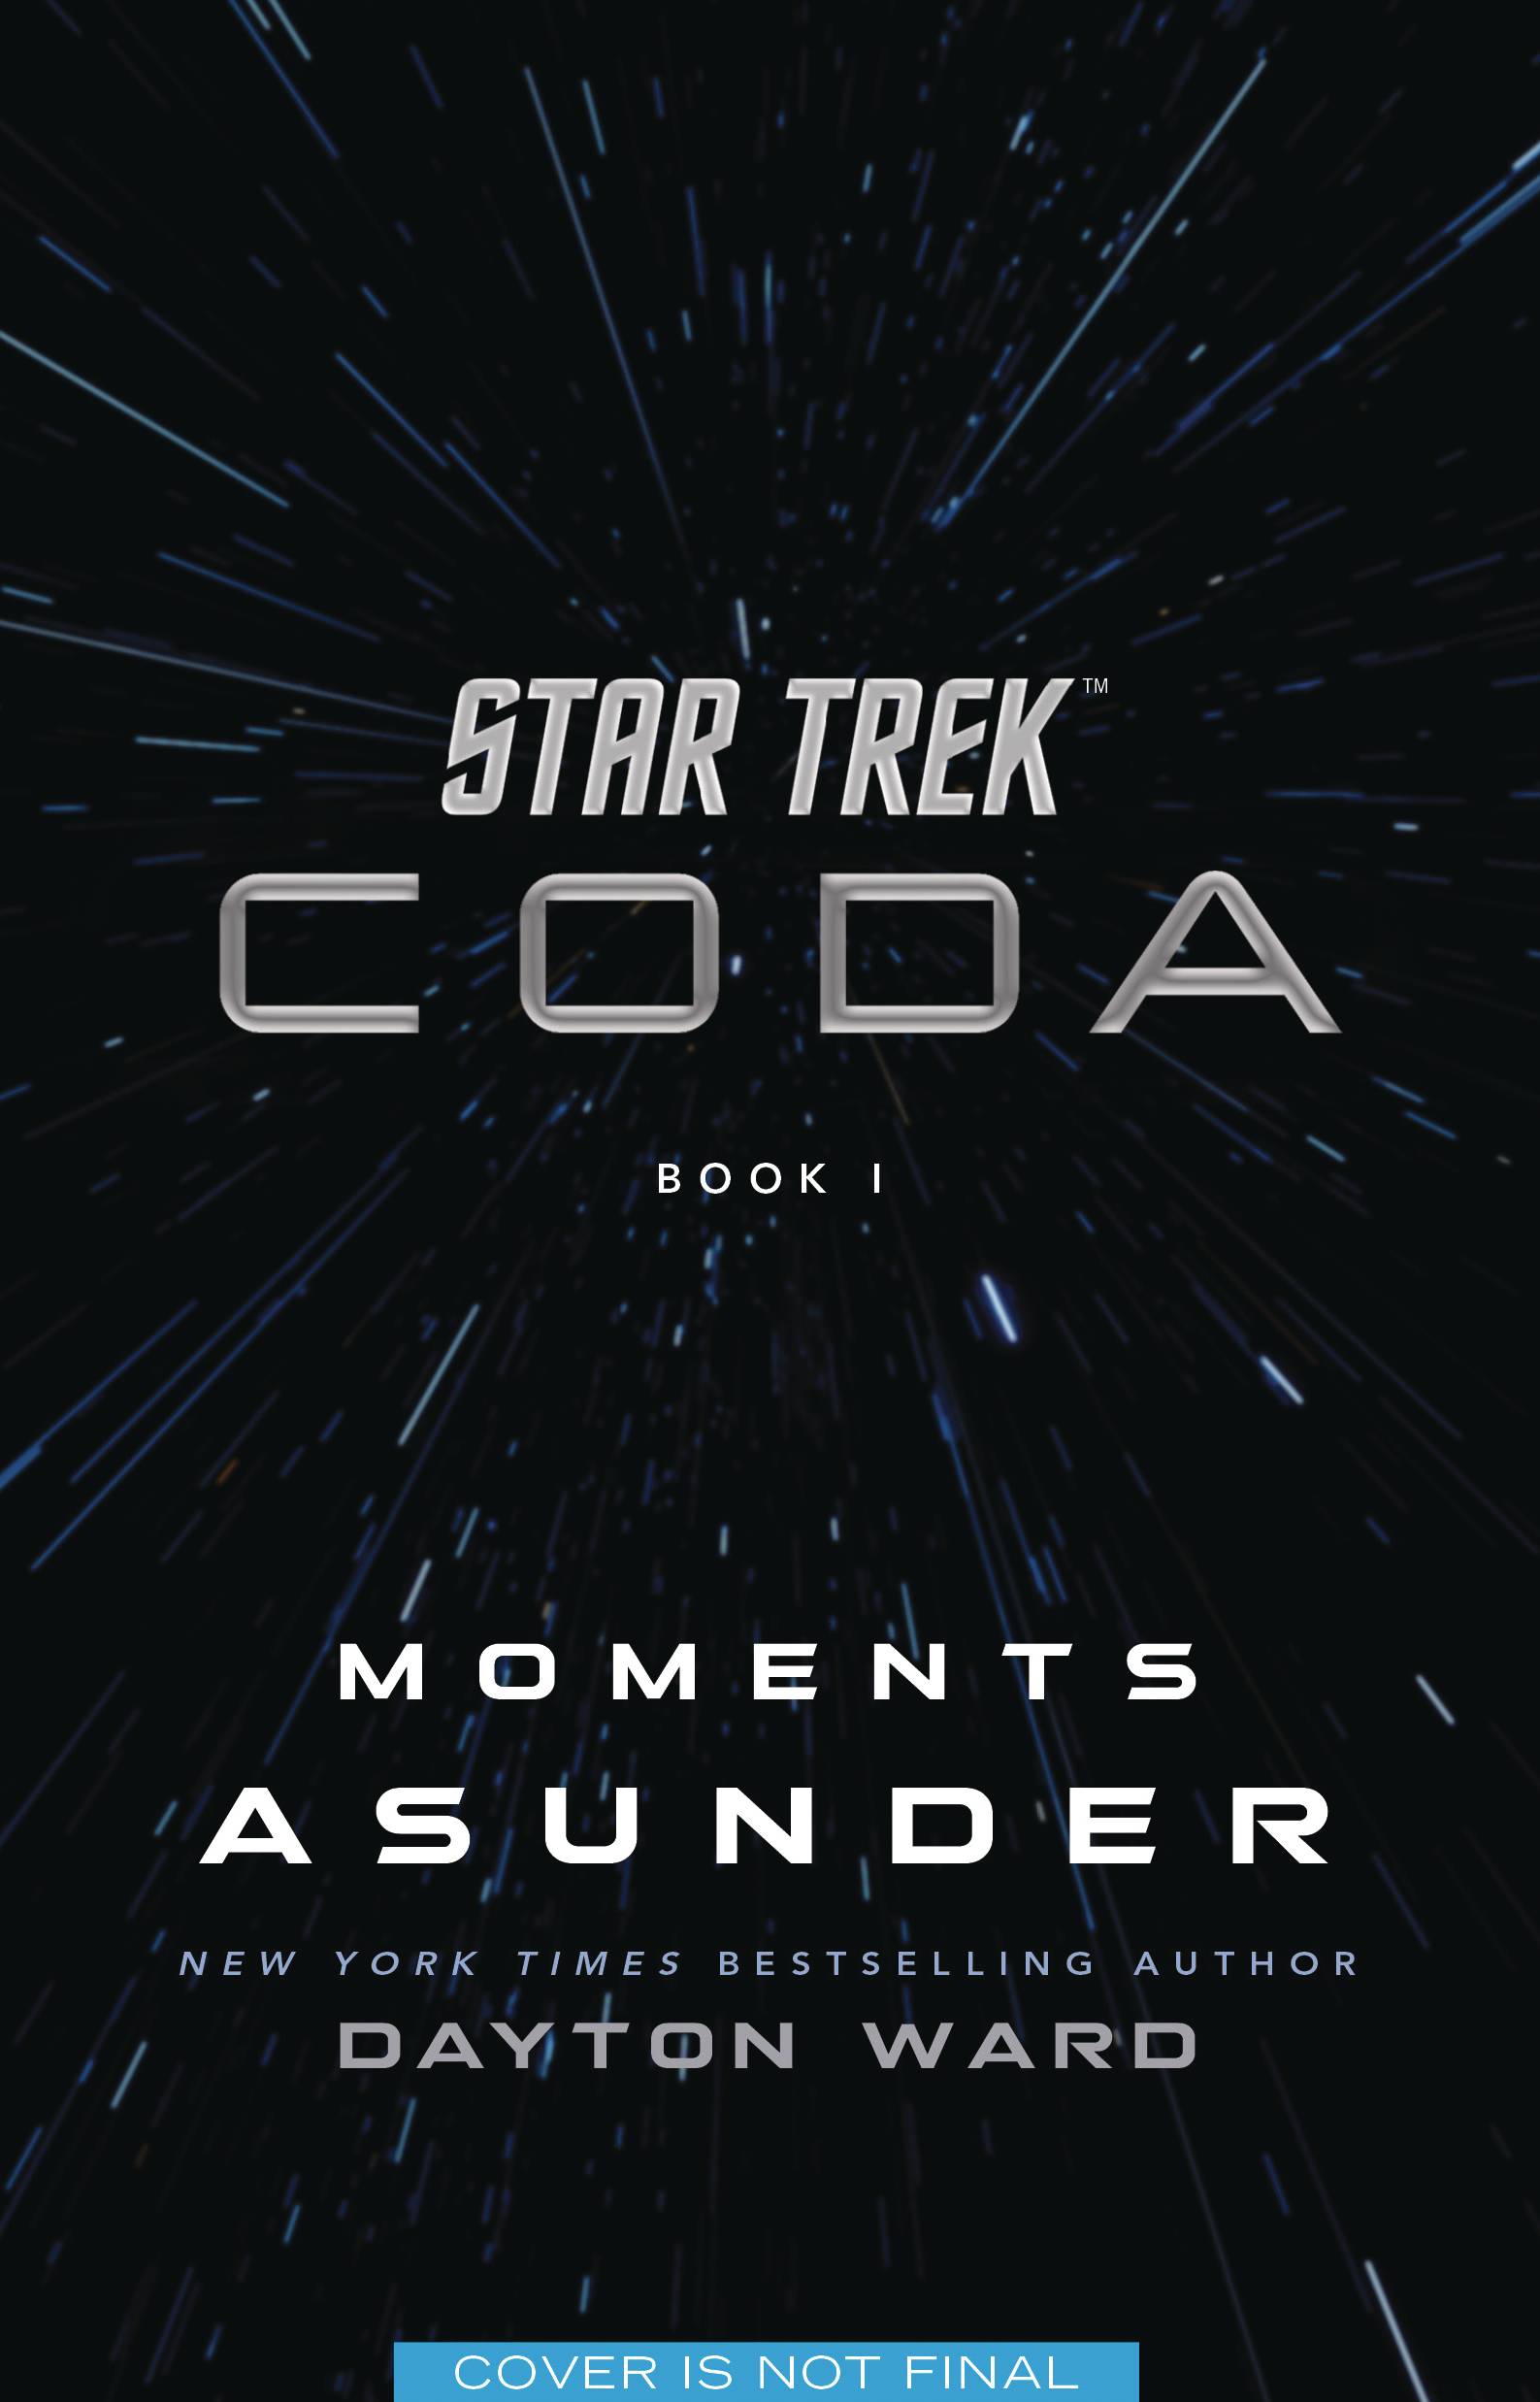 STAR TREK CODA NOVEL BOOK 01 MOMENTS ASUNDER